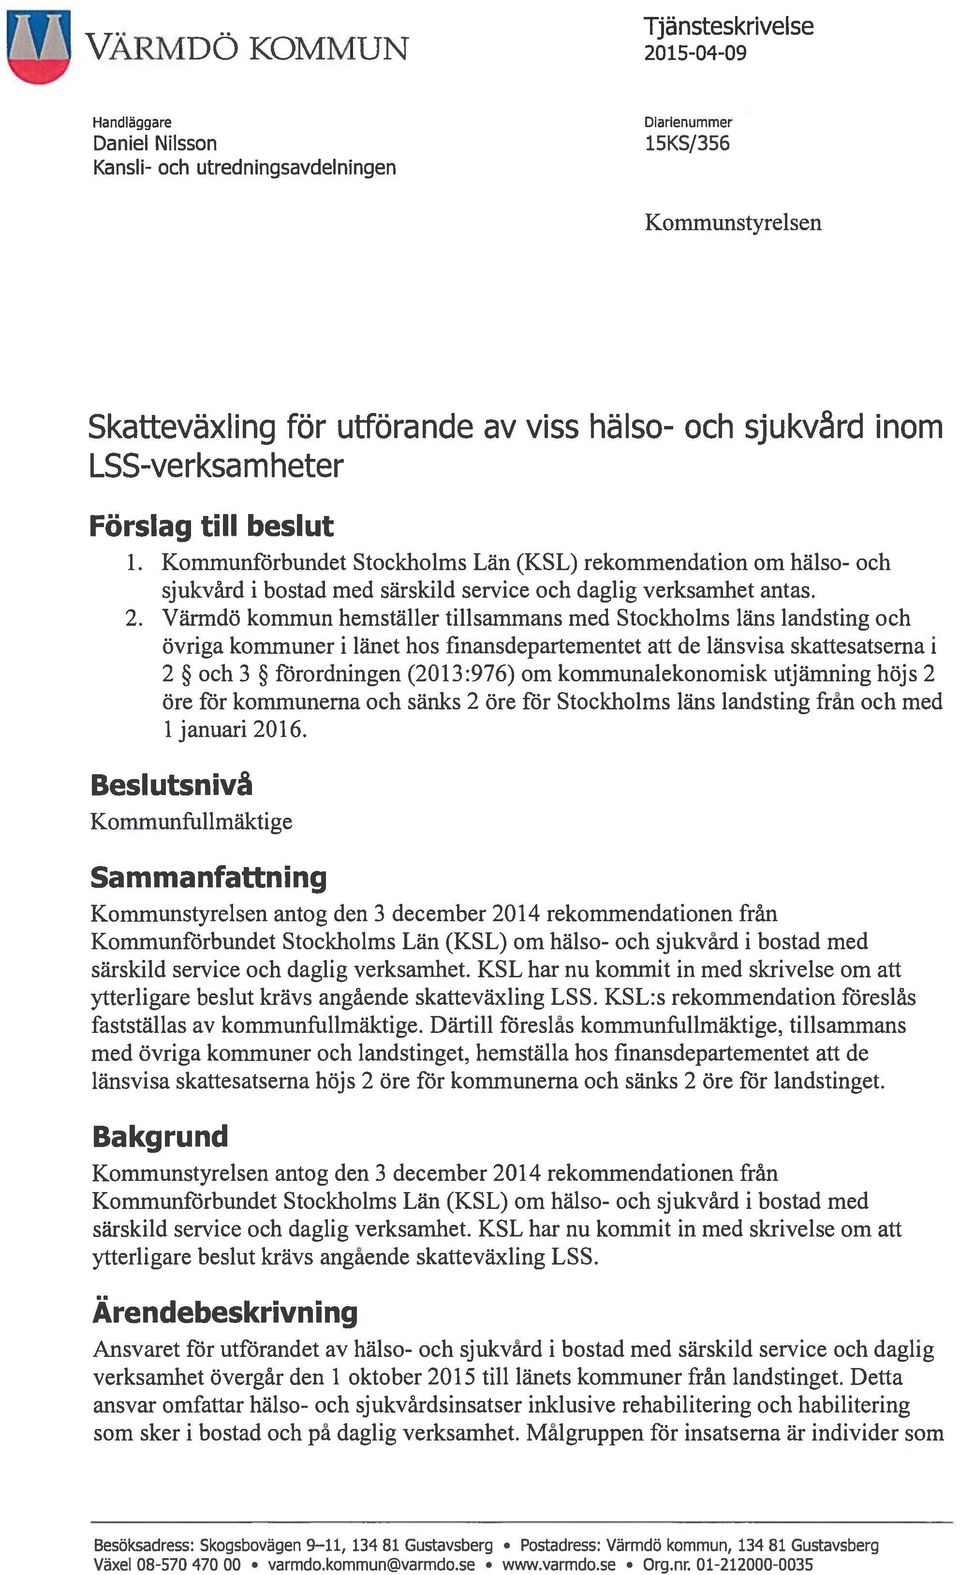 Värmdö kommun hemställer tillsammans med Stockholms läns landsting och övriga kommuner i länet hos finansdepartementet att de länsvisa skattesatserna i 2 och 3 förordningen (20 13:976) om